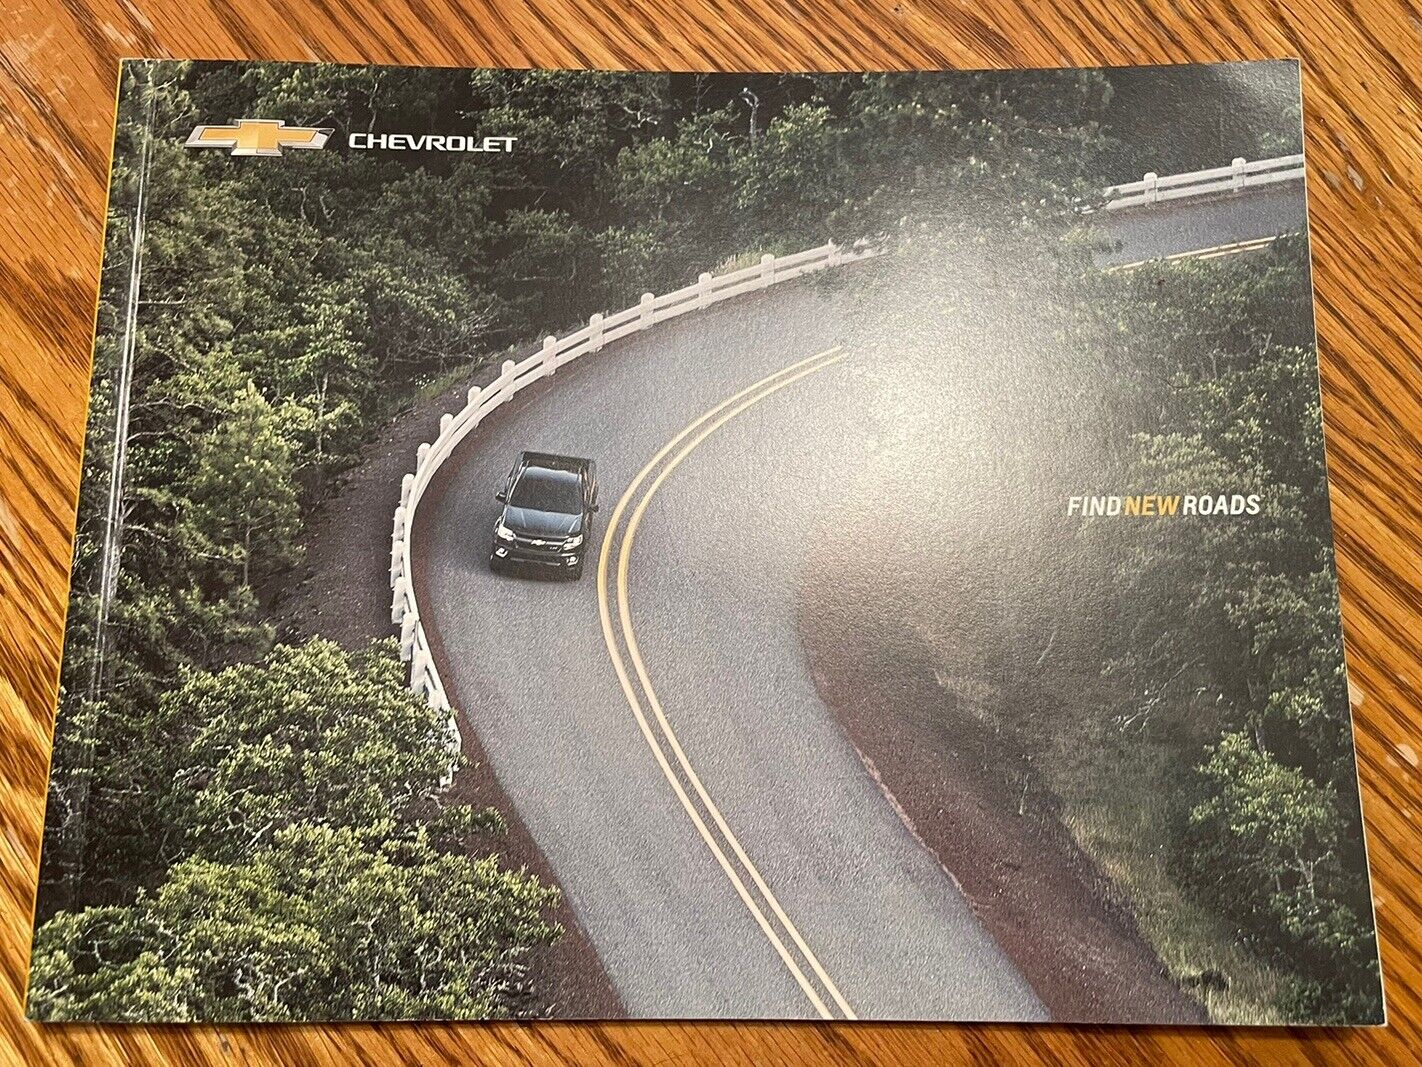 2015 Chevrolet Brochures - Chevrolet Brochures - 2015 Chevrolet Truck Brochures